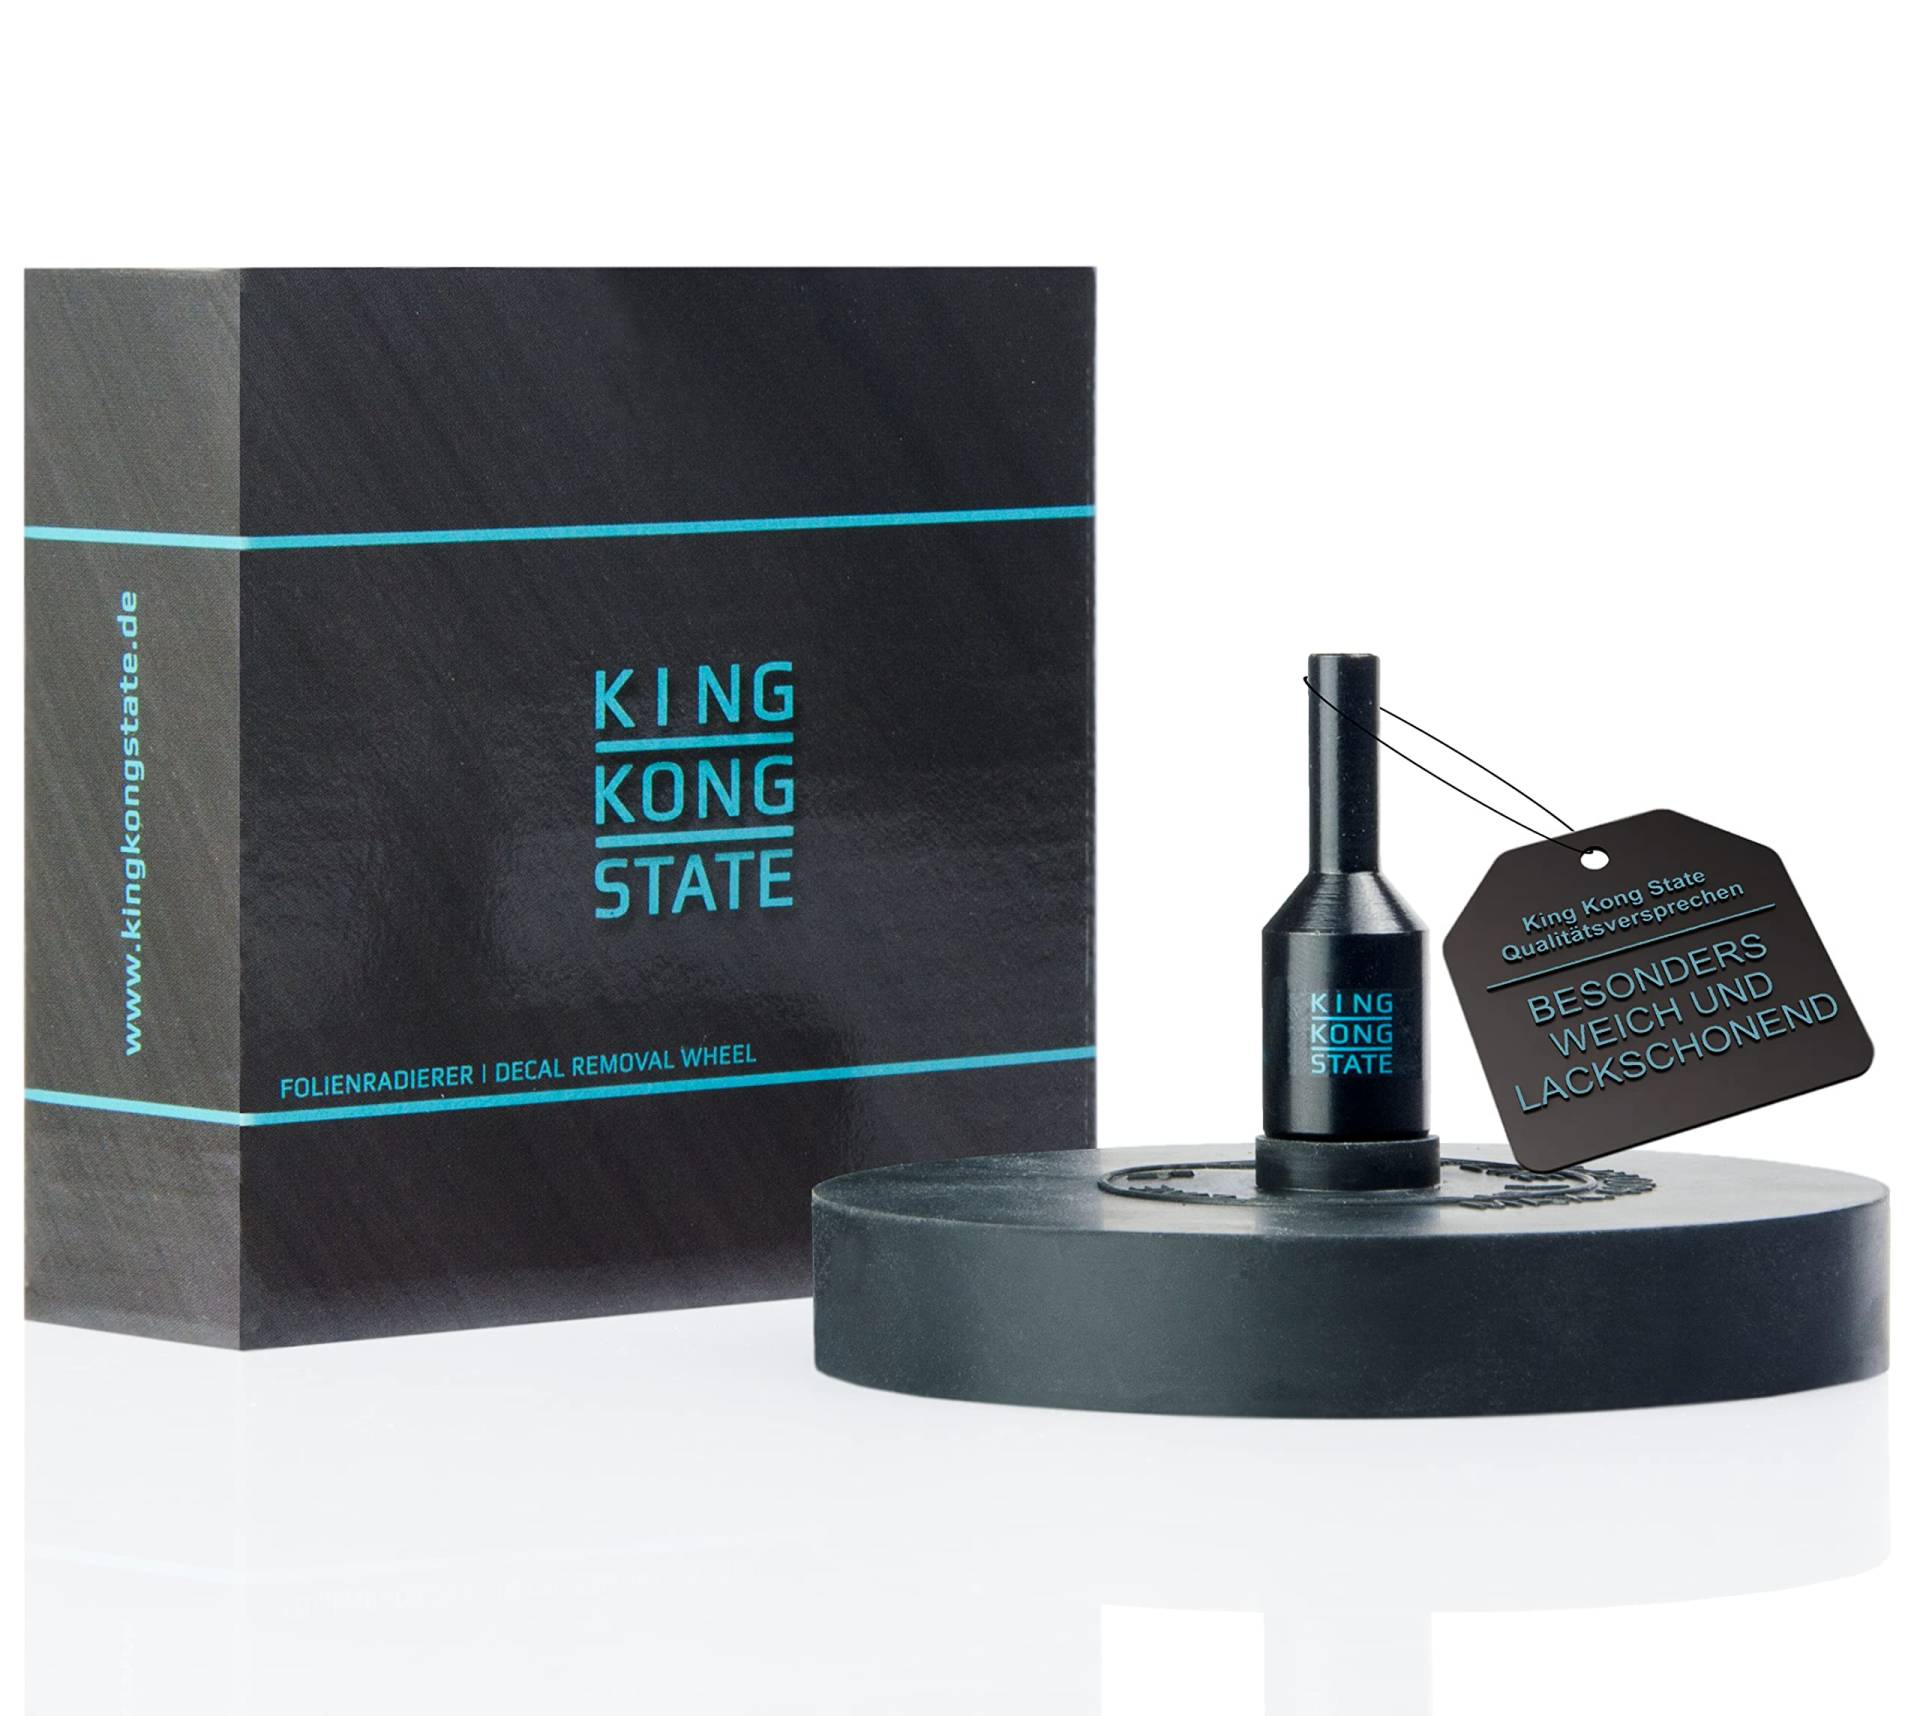 King Kong State Folienradierer zur Entfernung von Folien und Aufklebern auf Autos und Motorrädern - schwarzer Radierer für Akku-Bohrmaschinen von King Kong State